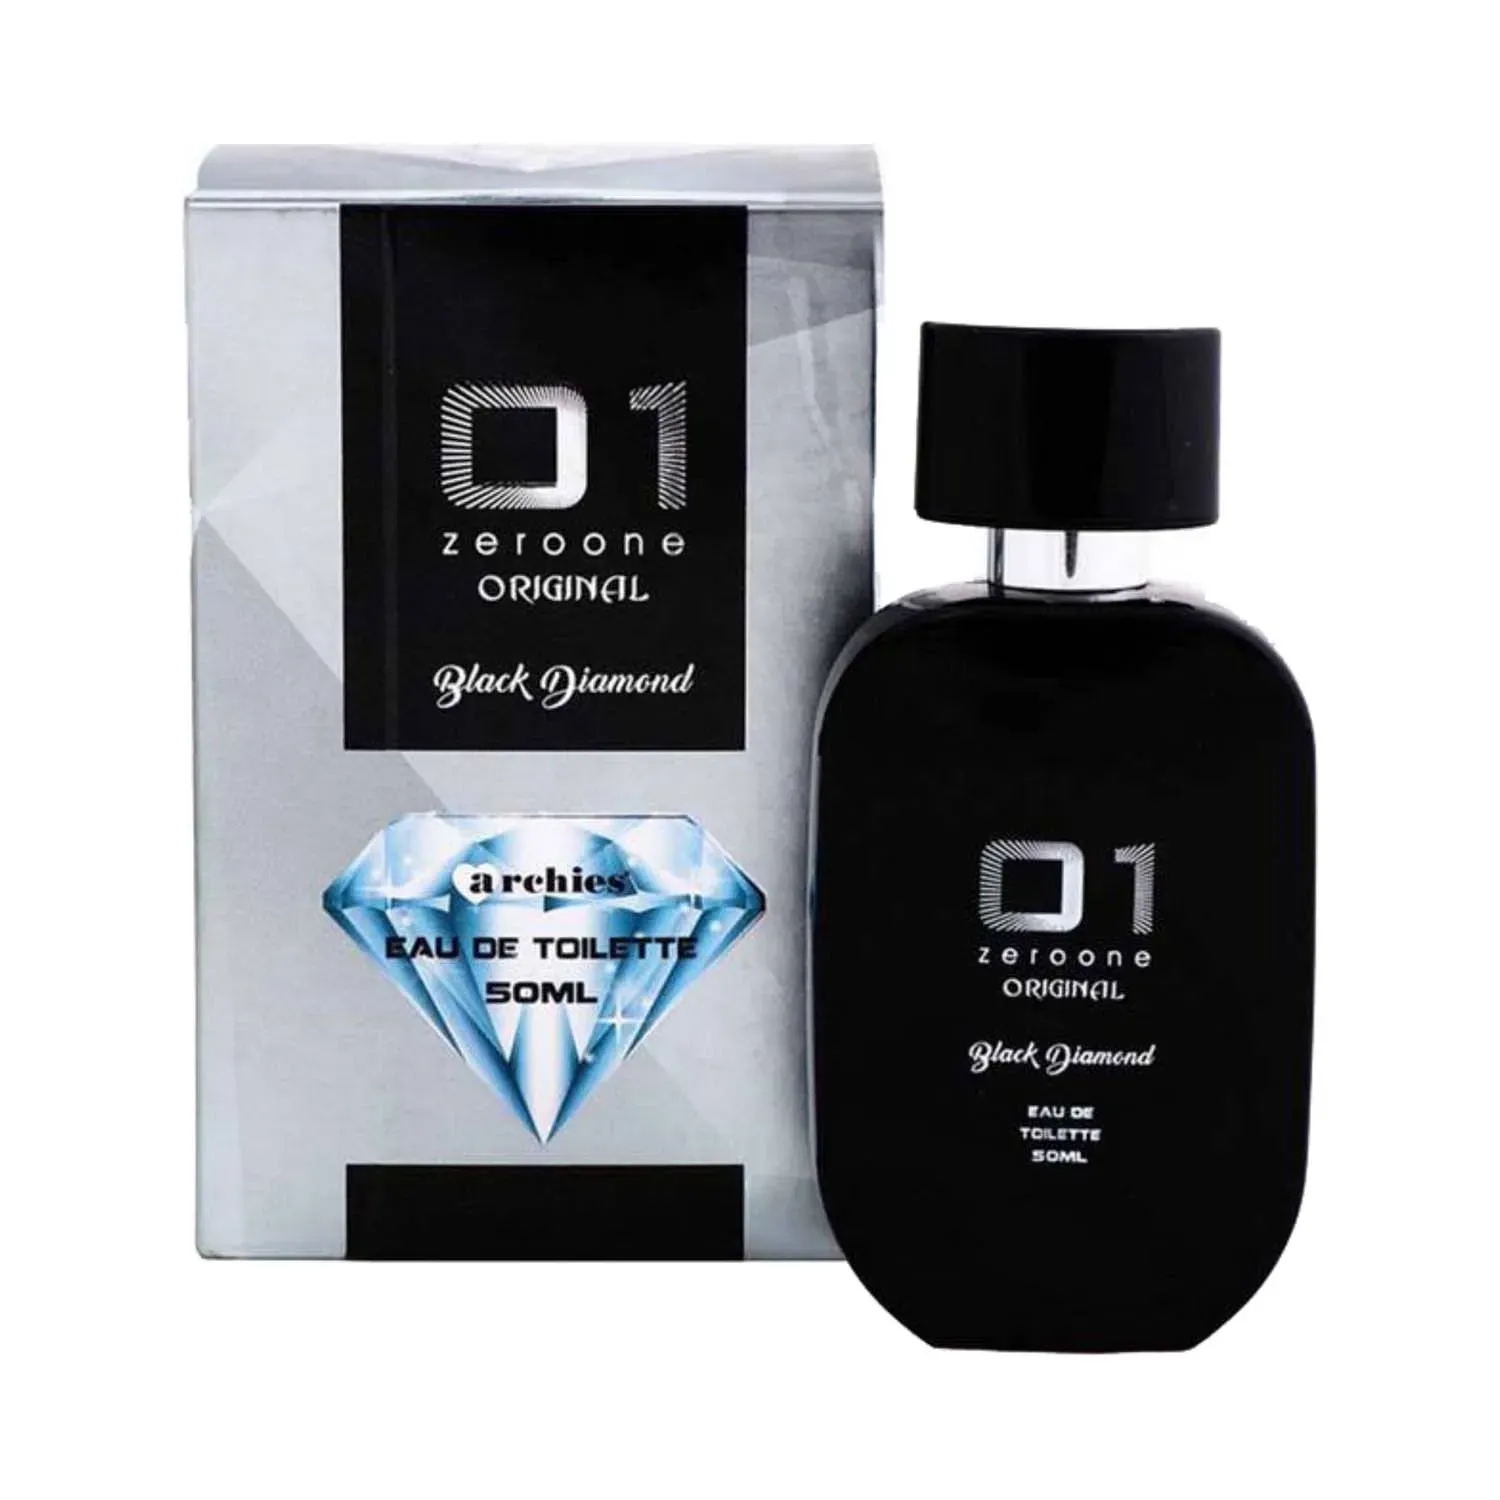 Archies Parfum 01 Original Black Diamond Eau De Toilette (50ml)